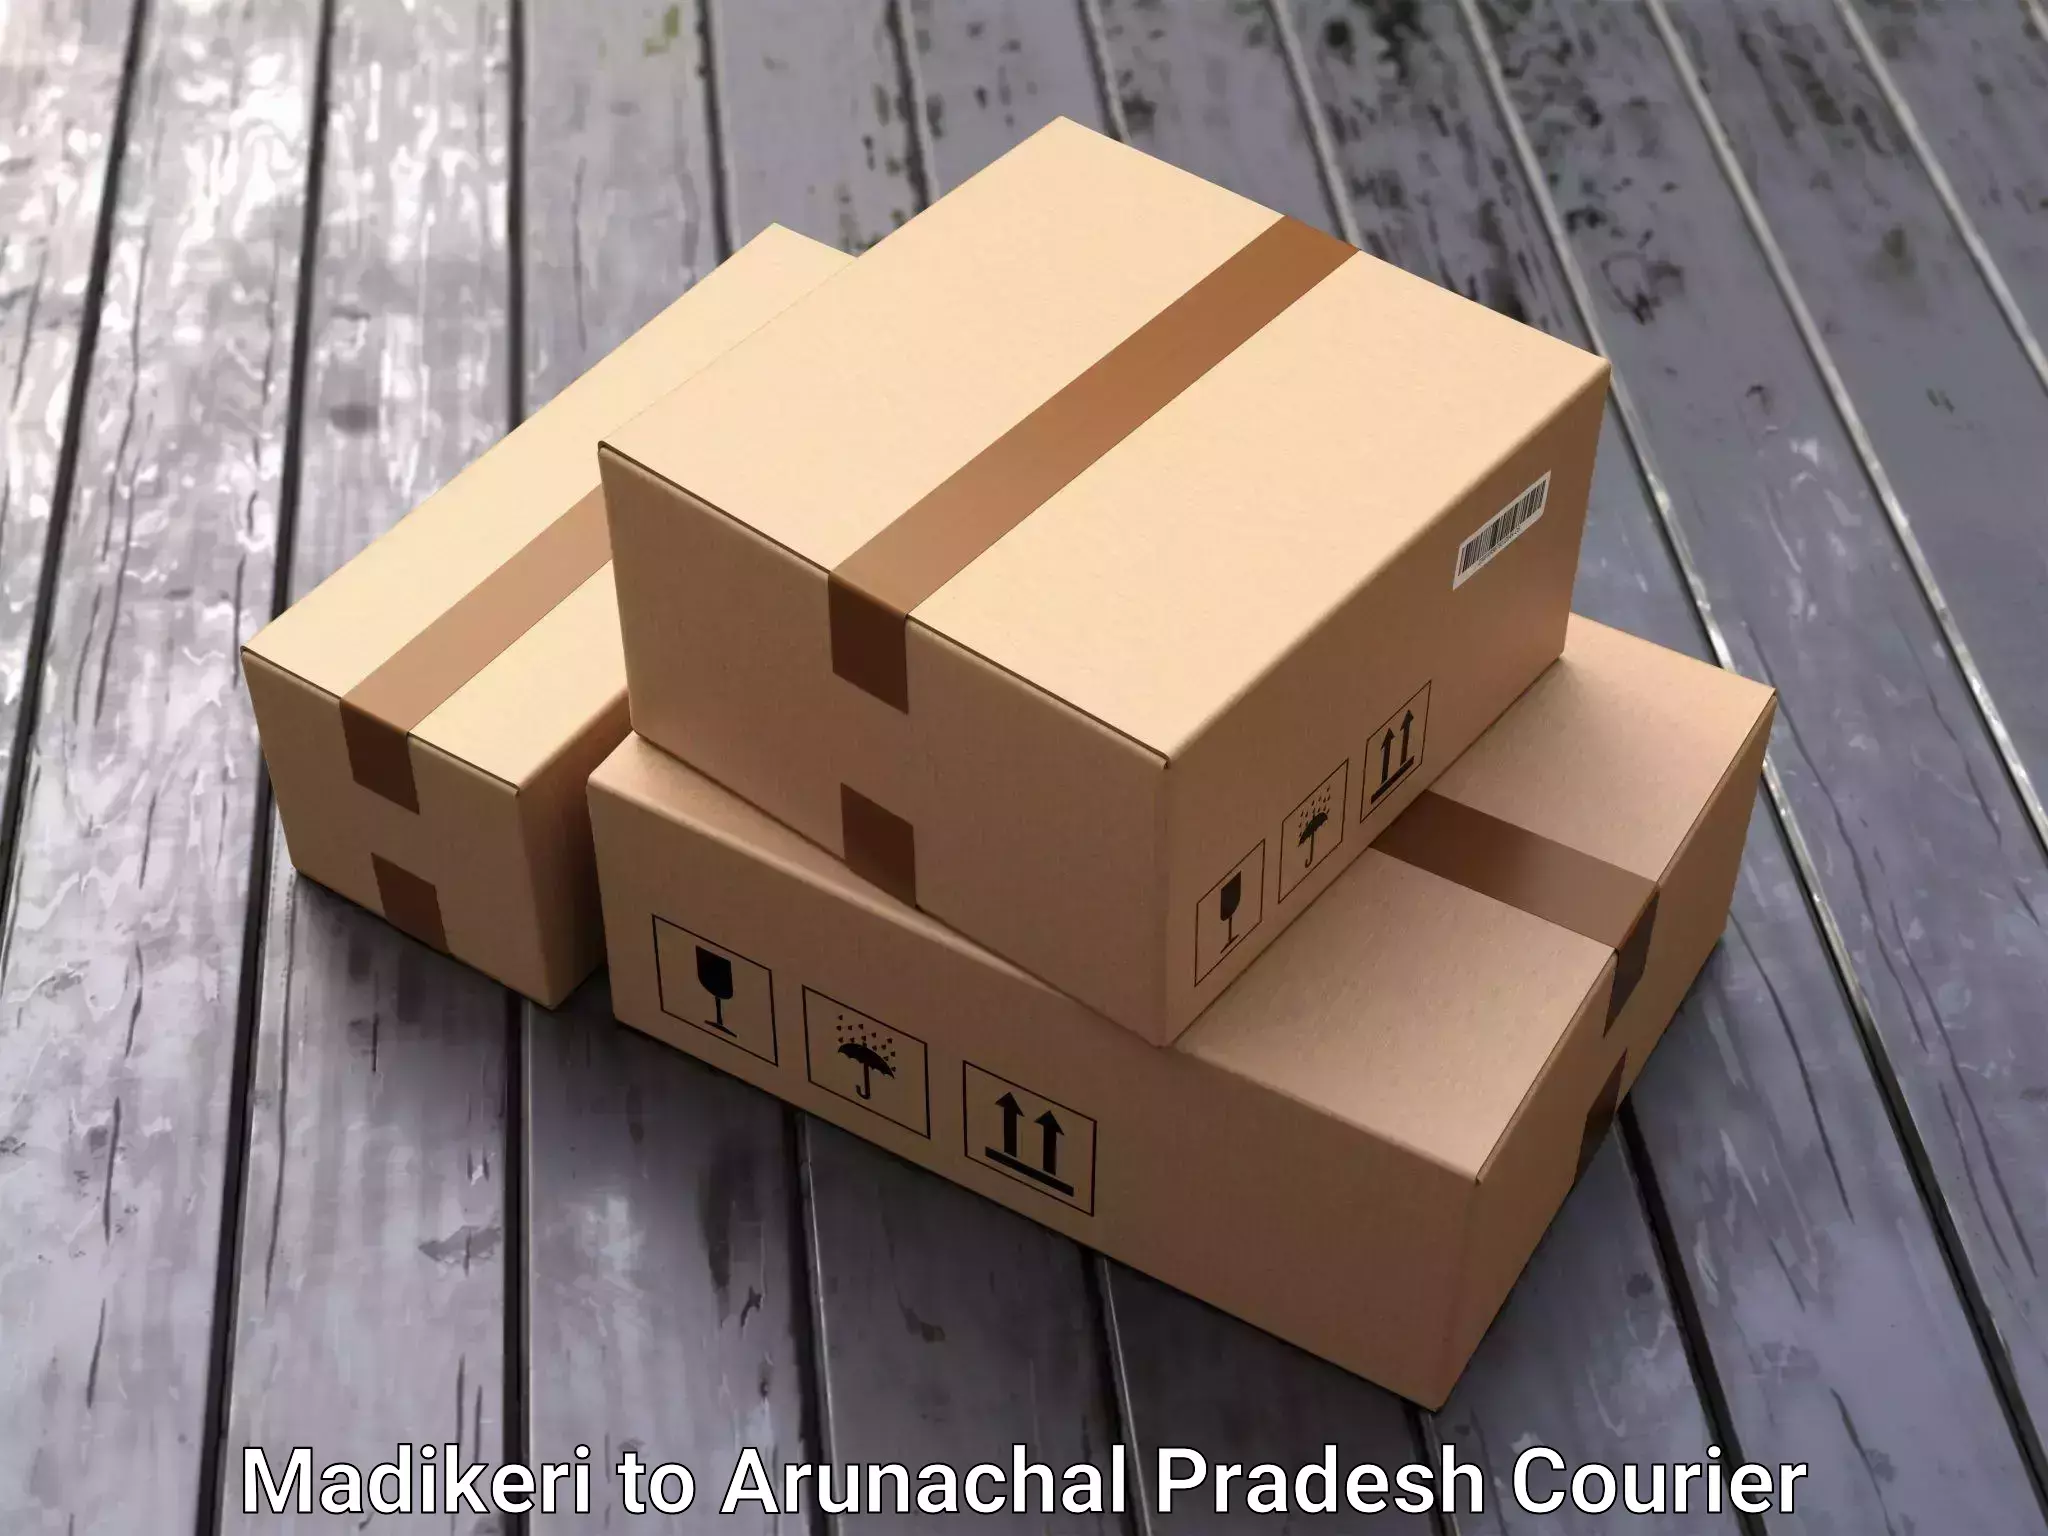 Furniture transport experts Madikeri to Arunachal Pradesh